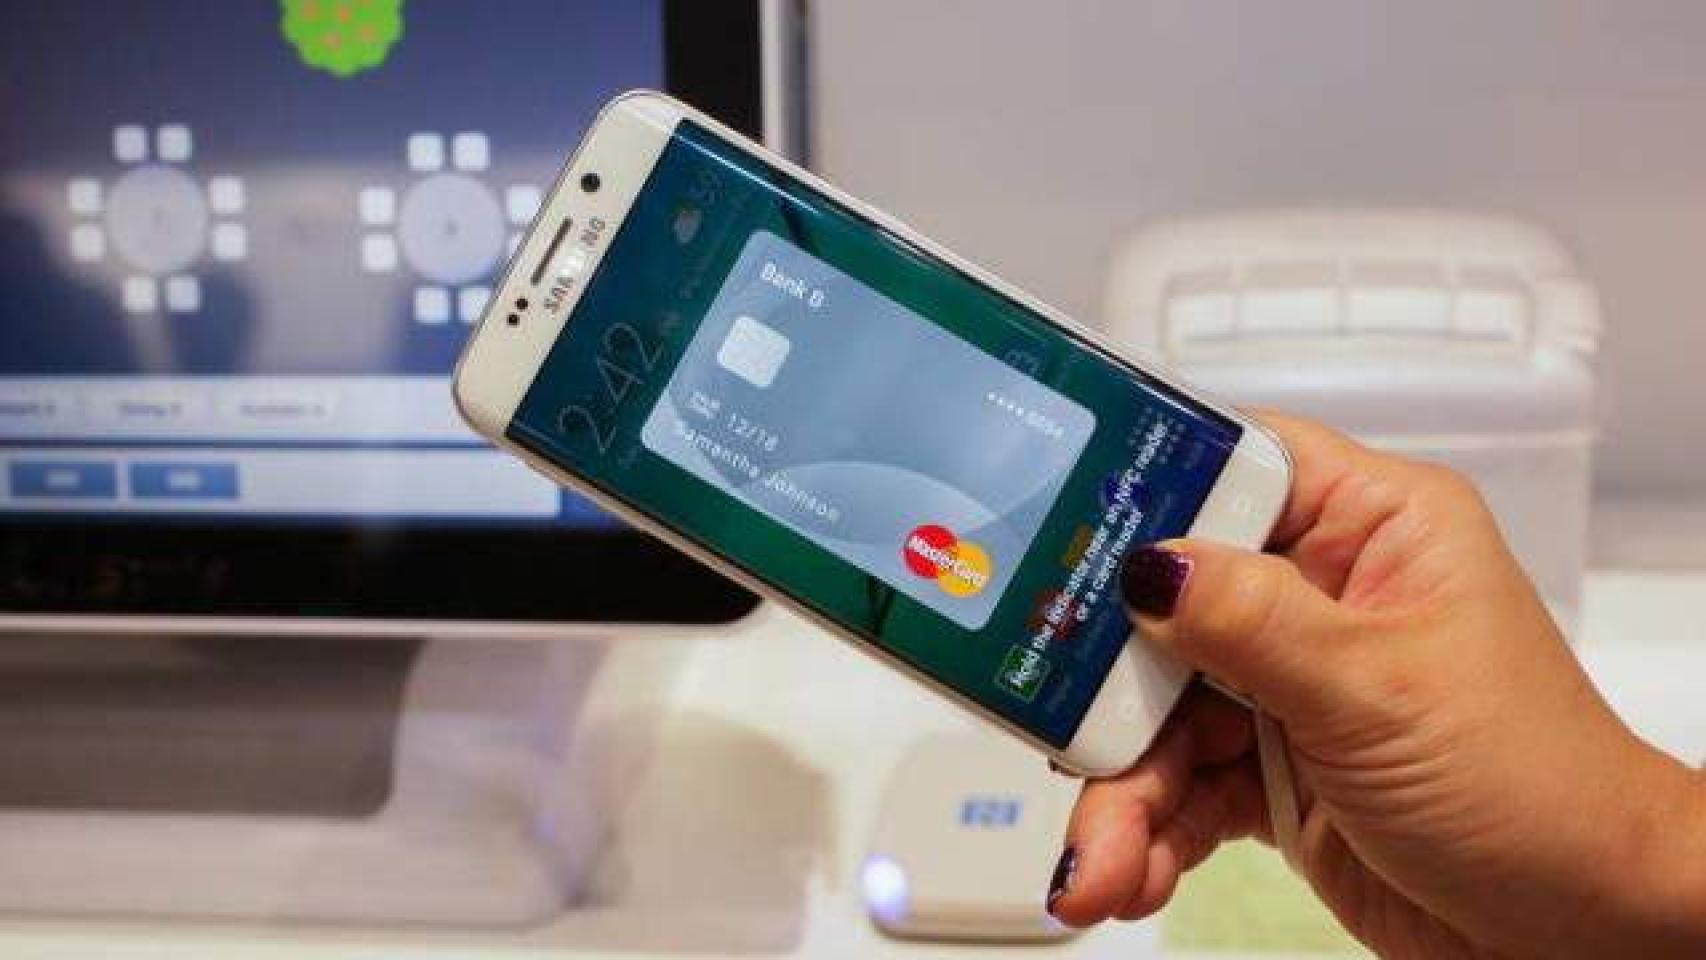 Samsung Pay llegará a Europa en Septiembre gracias a MasterCard